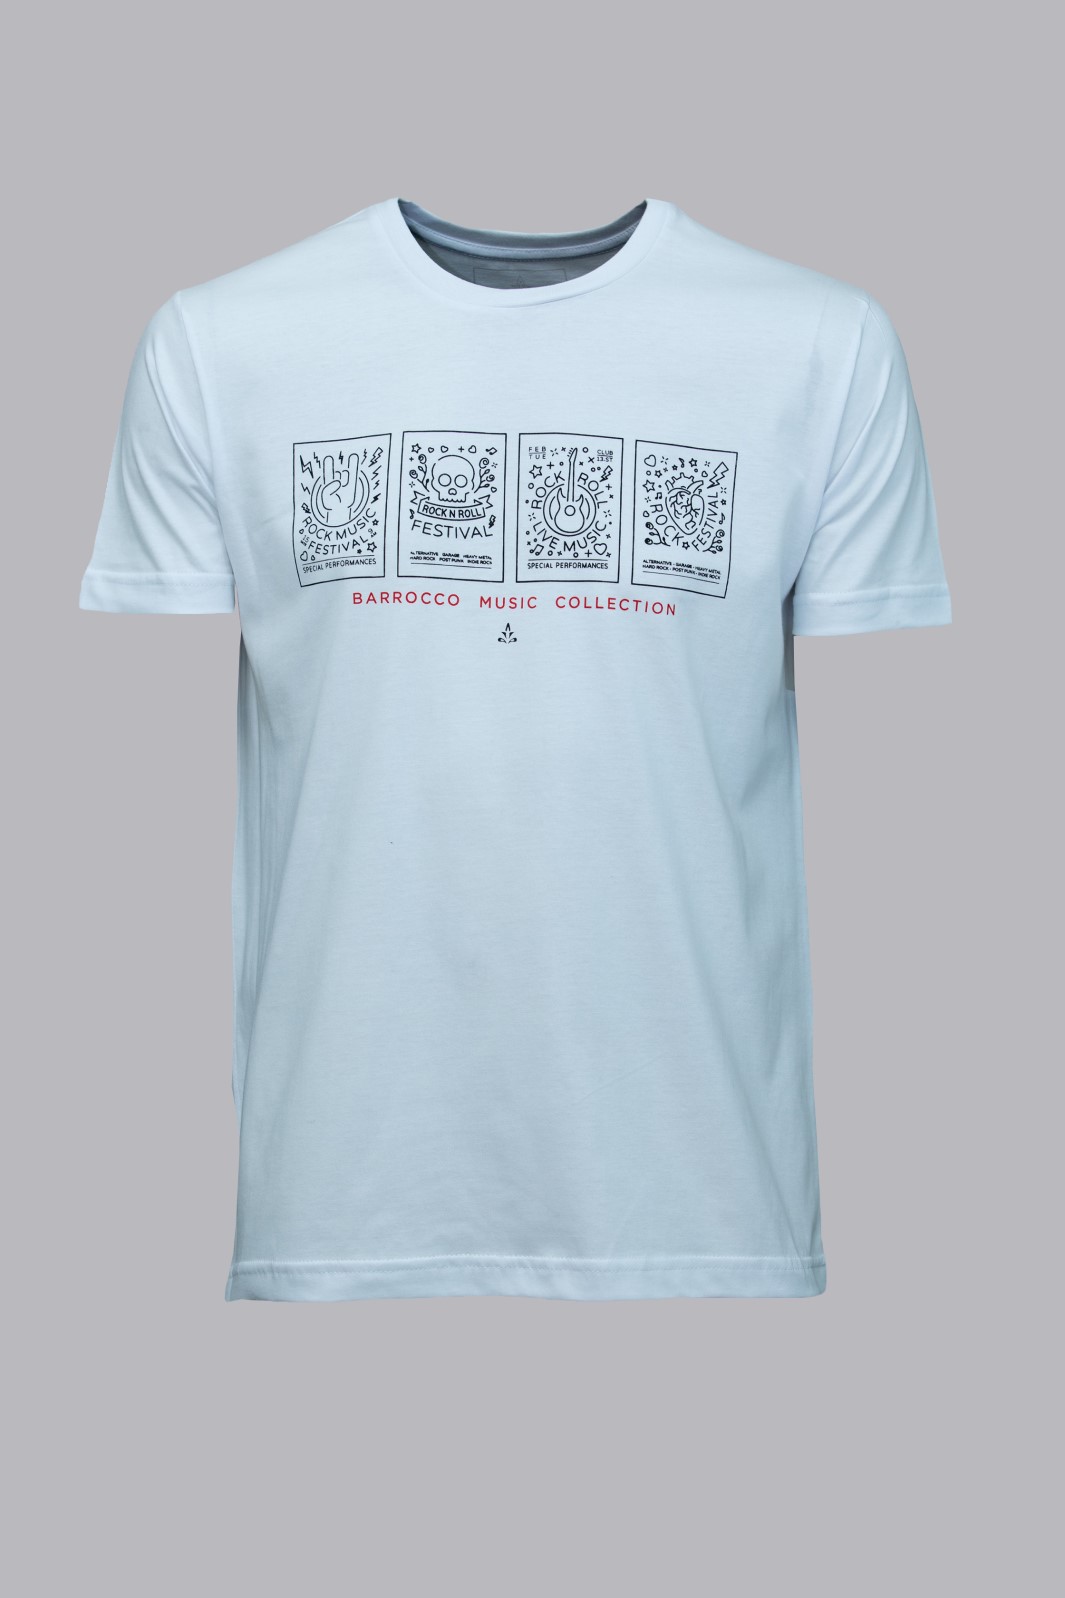 Camiseta Barrocco Coleção de Músicas - Foto 1